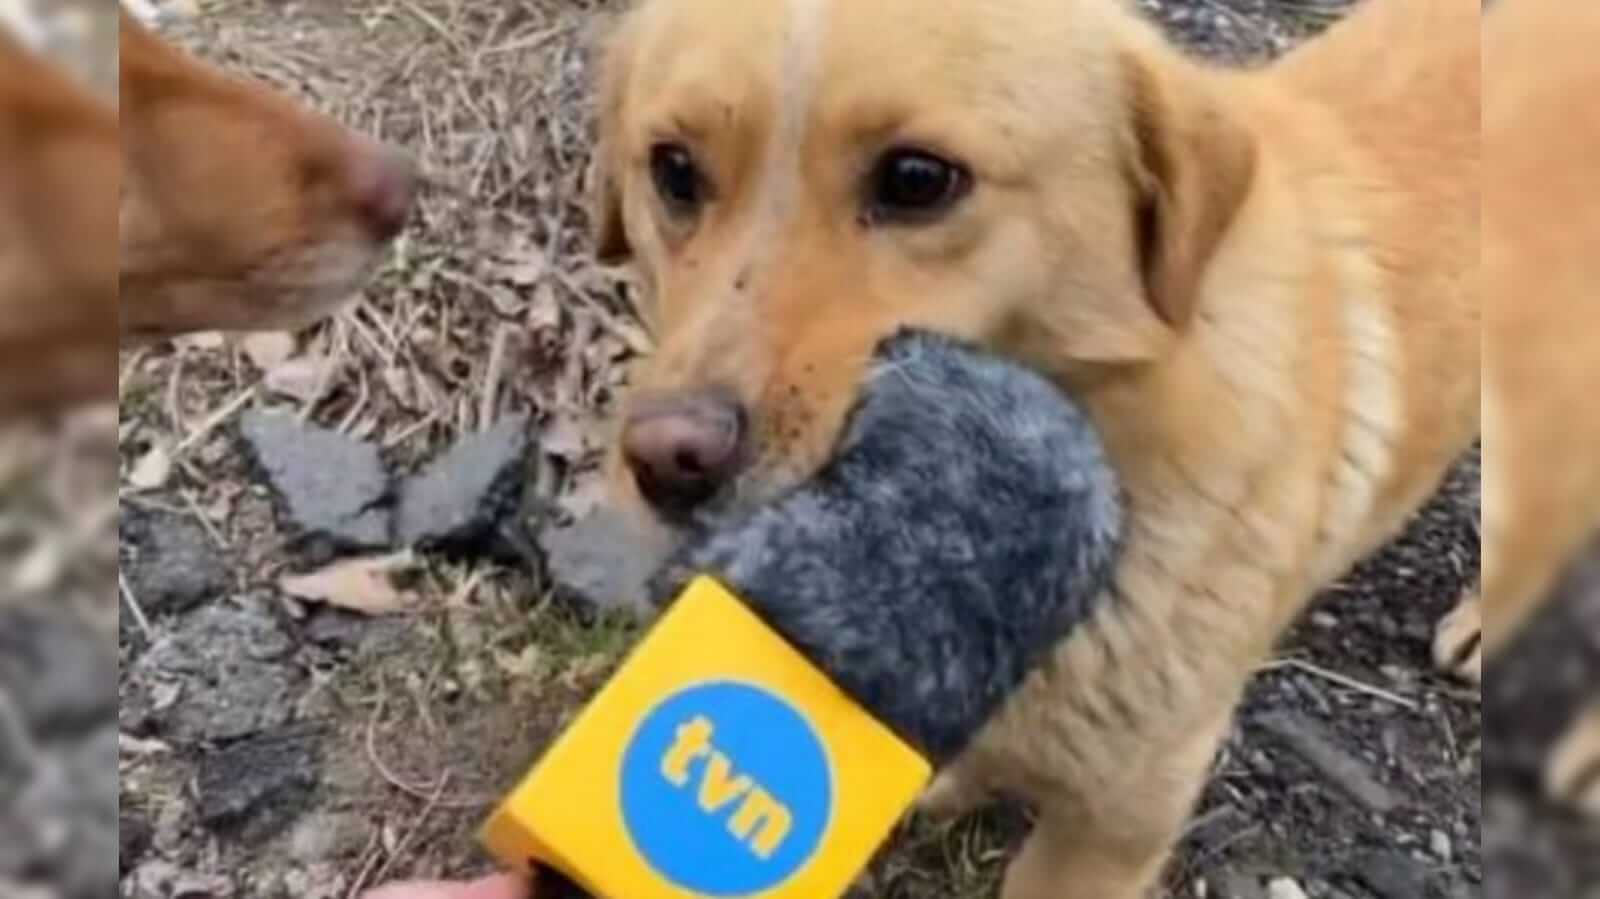 Cachorro mordendo microfone